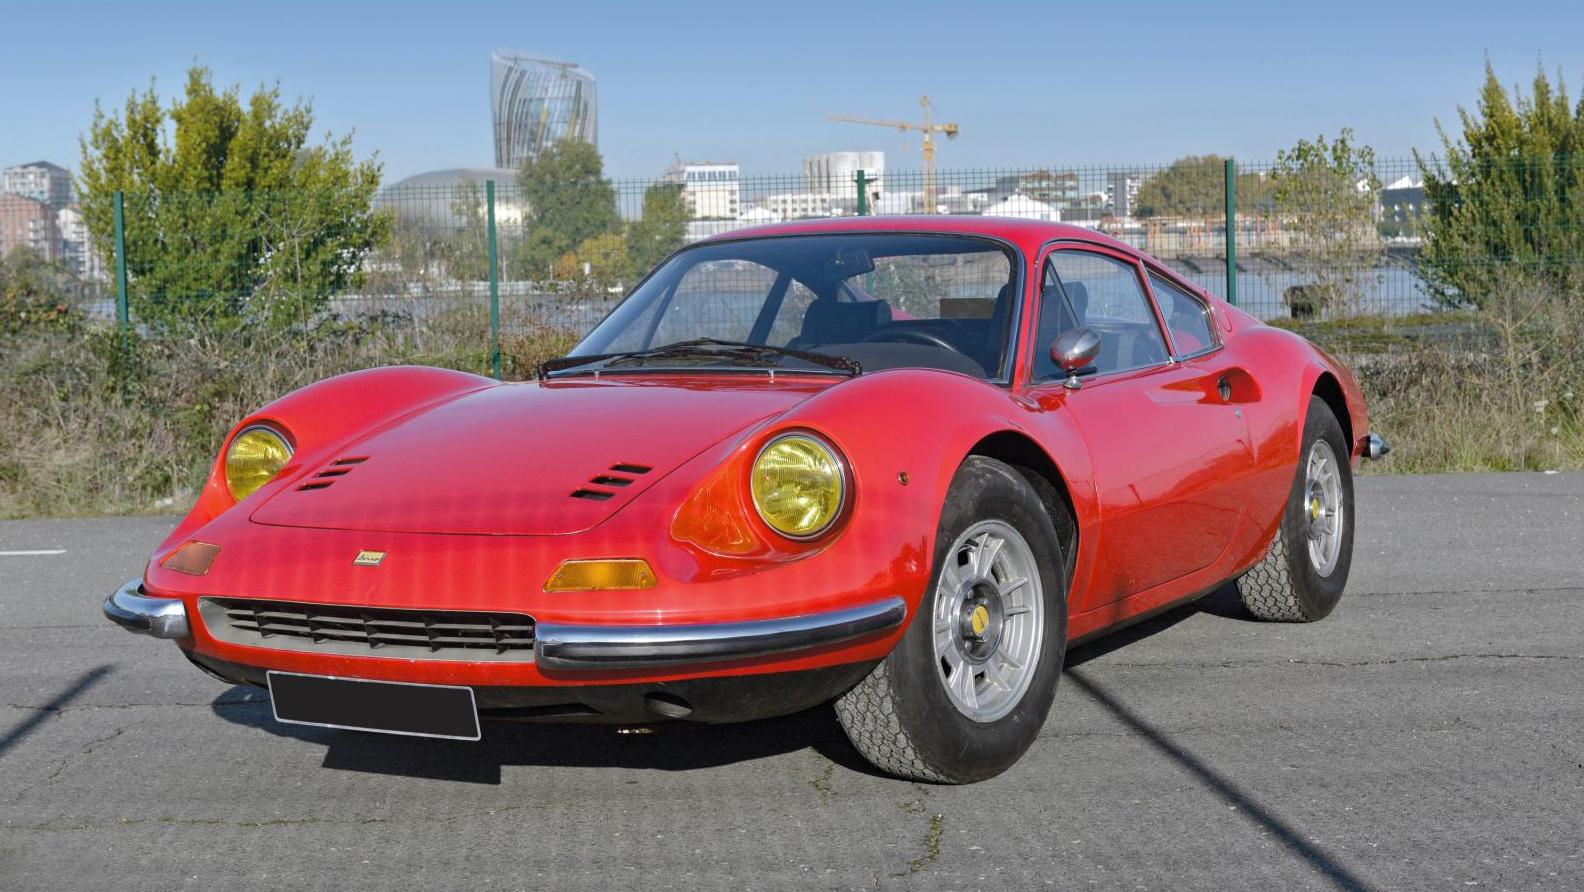 Ferrari Dino 246, moteur 135CS V6 transversal central de 2 418 cm3, trois carburateurs... À Bordeaux, une parade d’automobiles de prestige